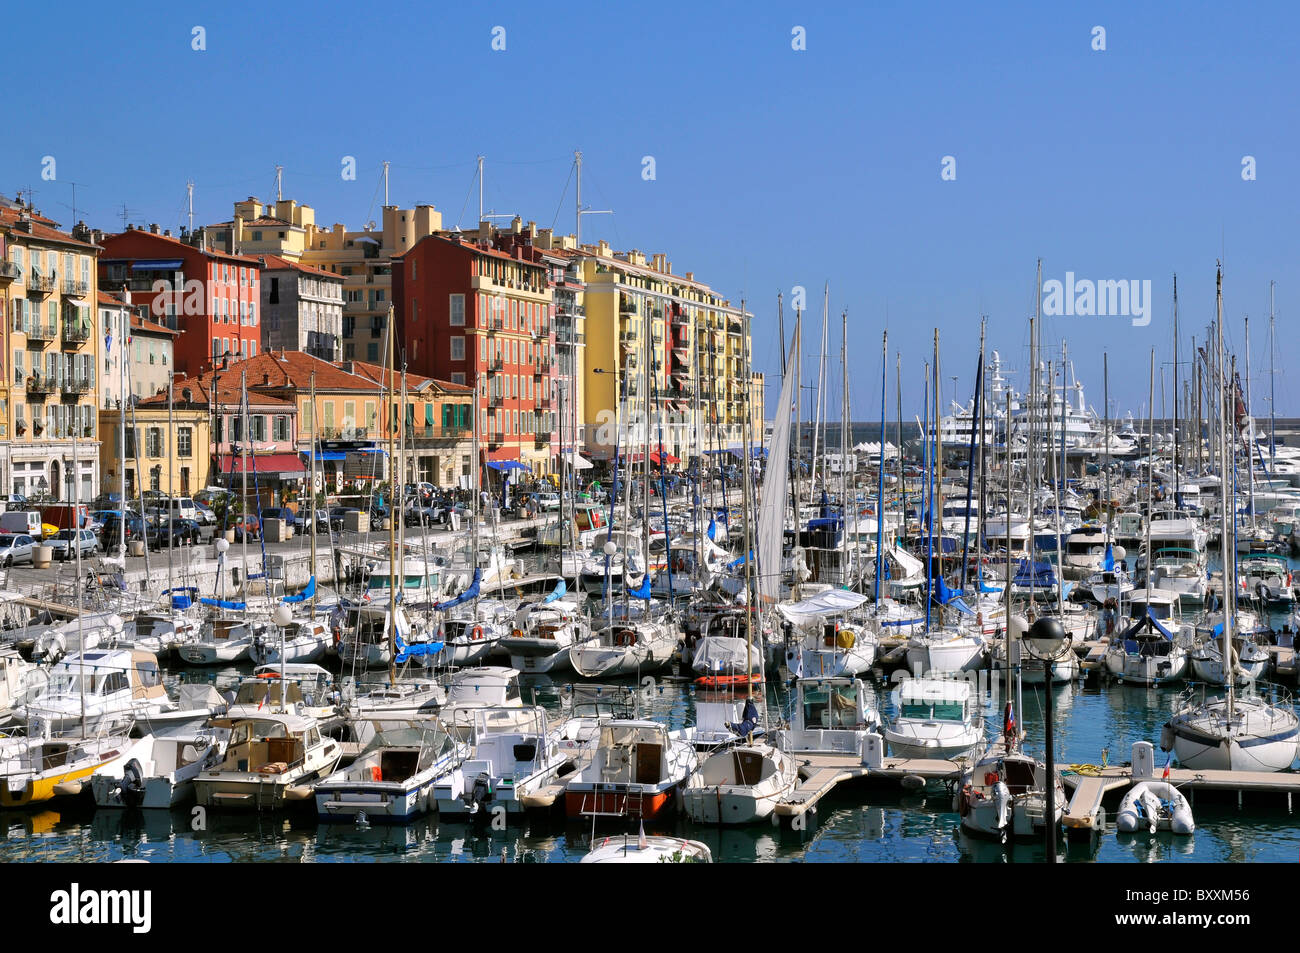 Hafen von Nizza im Südosten Frankreichs mit farbigen Gebäuden im Hintergrund, Departement Alpes-Maritimes; Luftbild Stockfoto